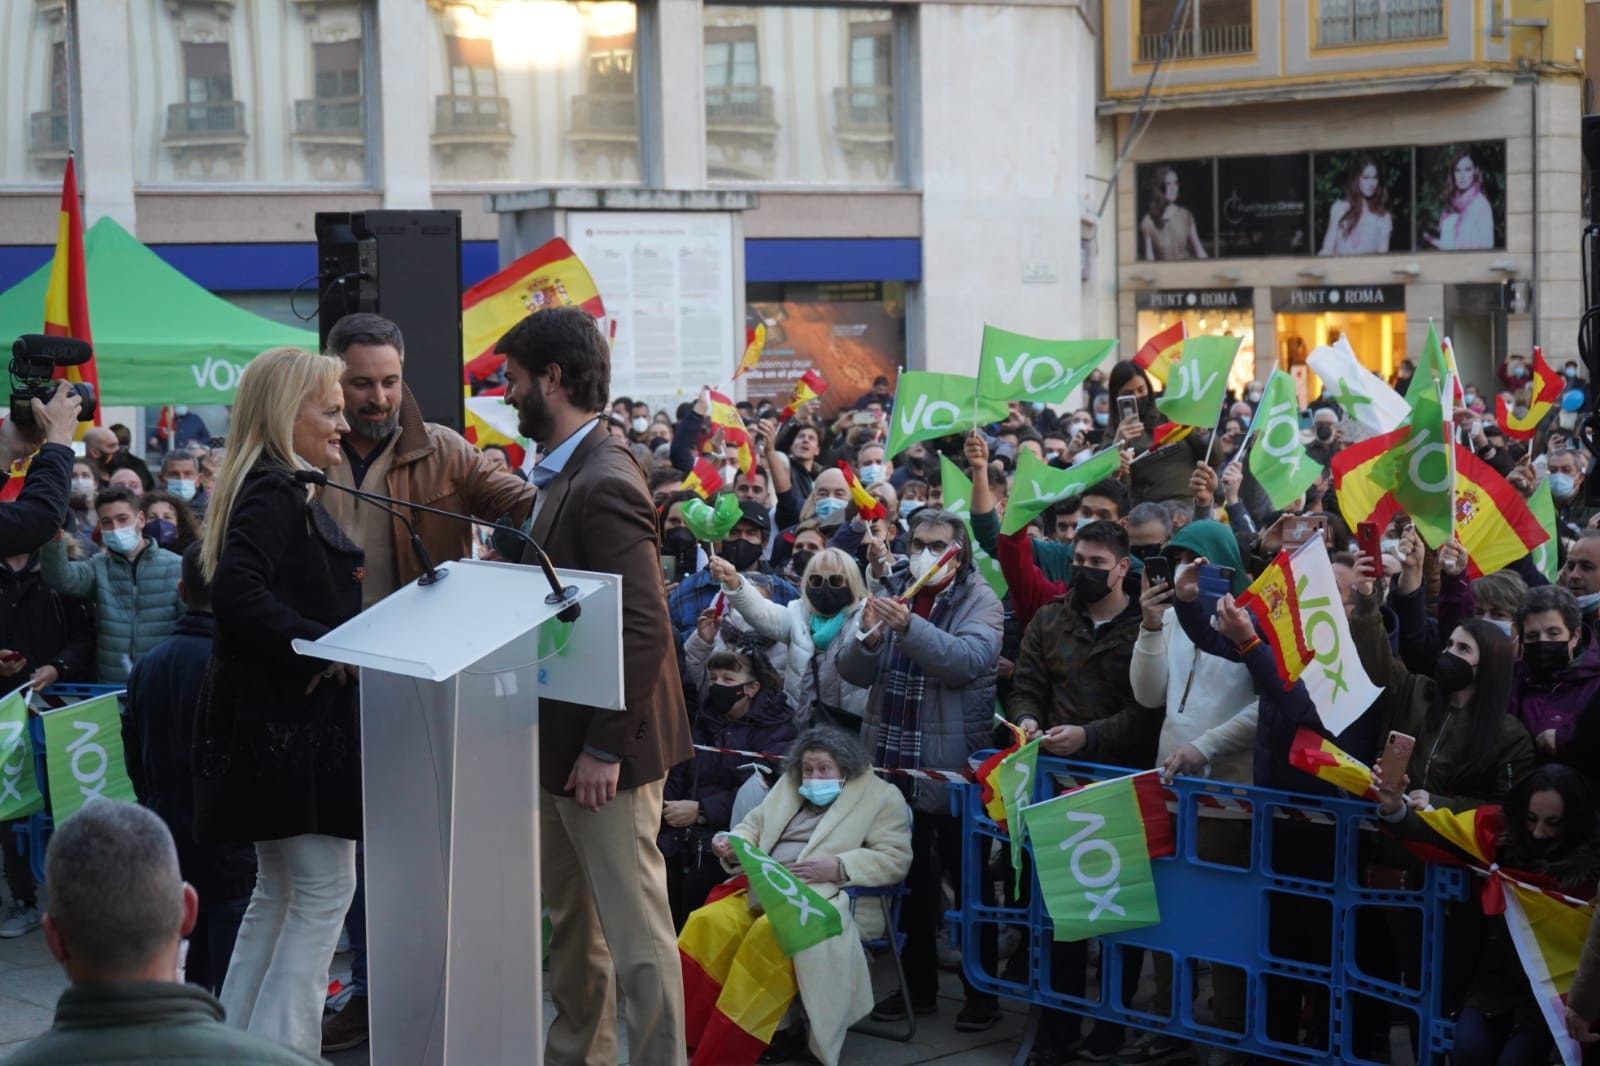 GALERÍA | Las imágenes del acto de VOX en Zamora con Santiago Abascal